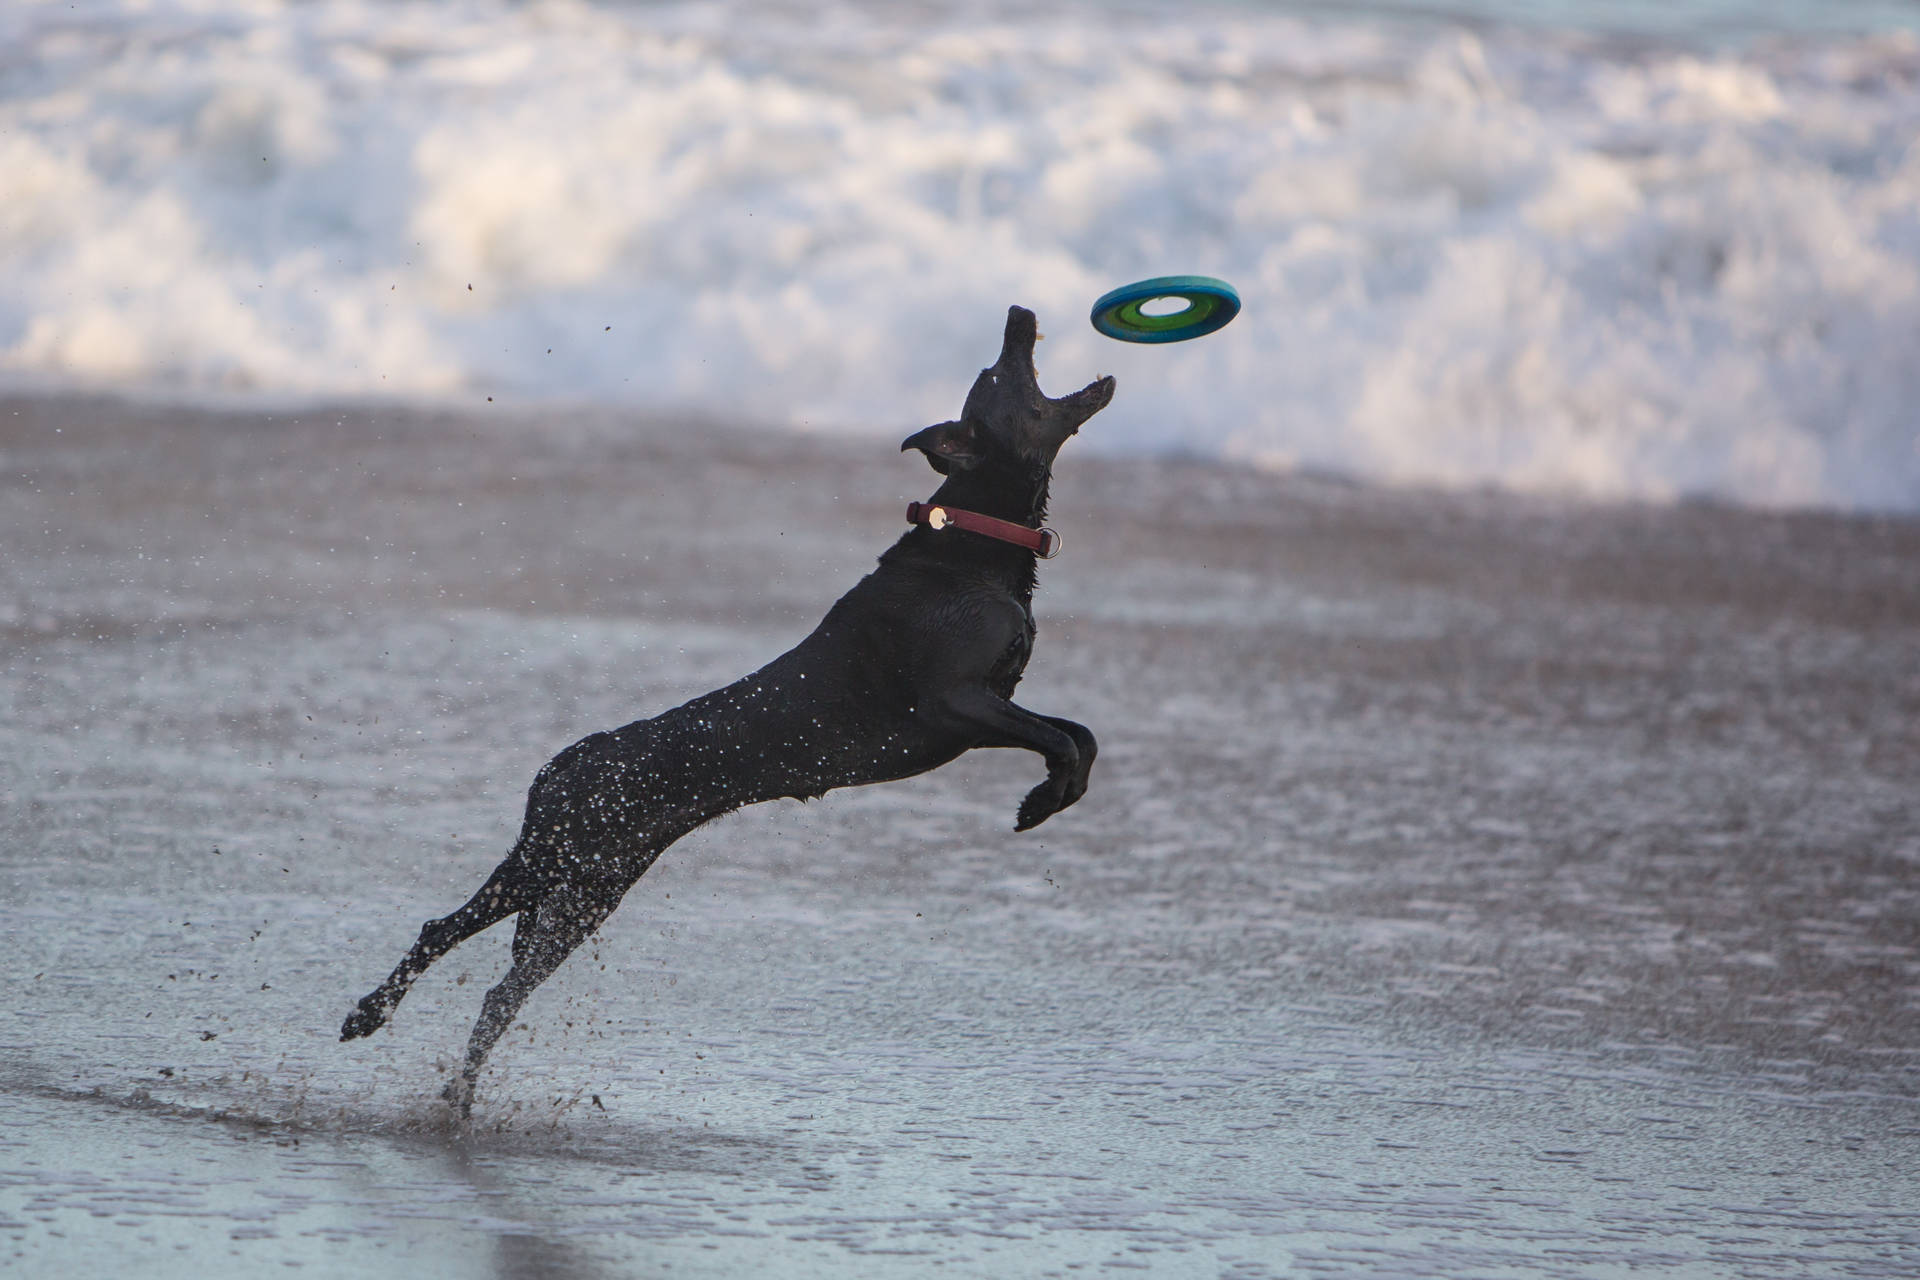 Svarthund Som Spelar Frisbee. Wallpaper